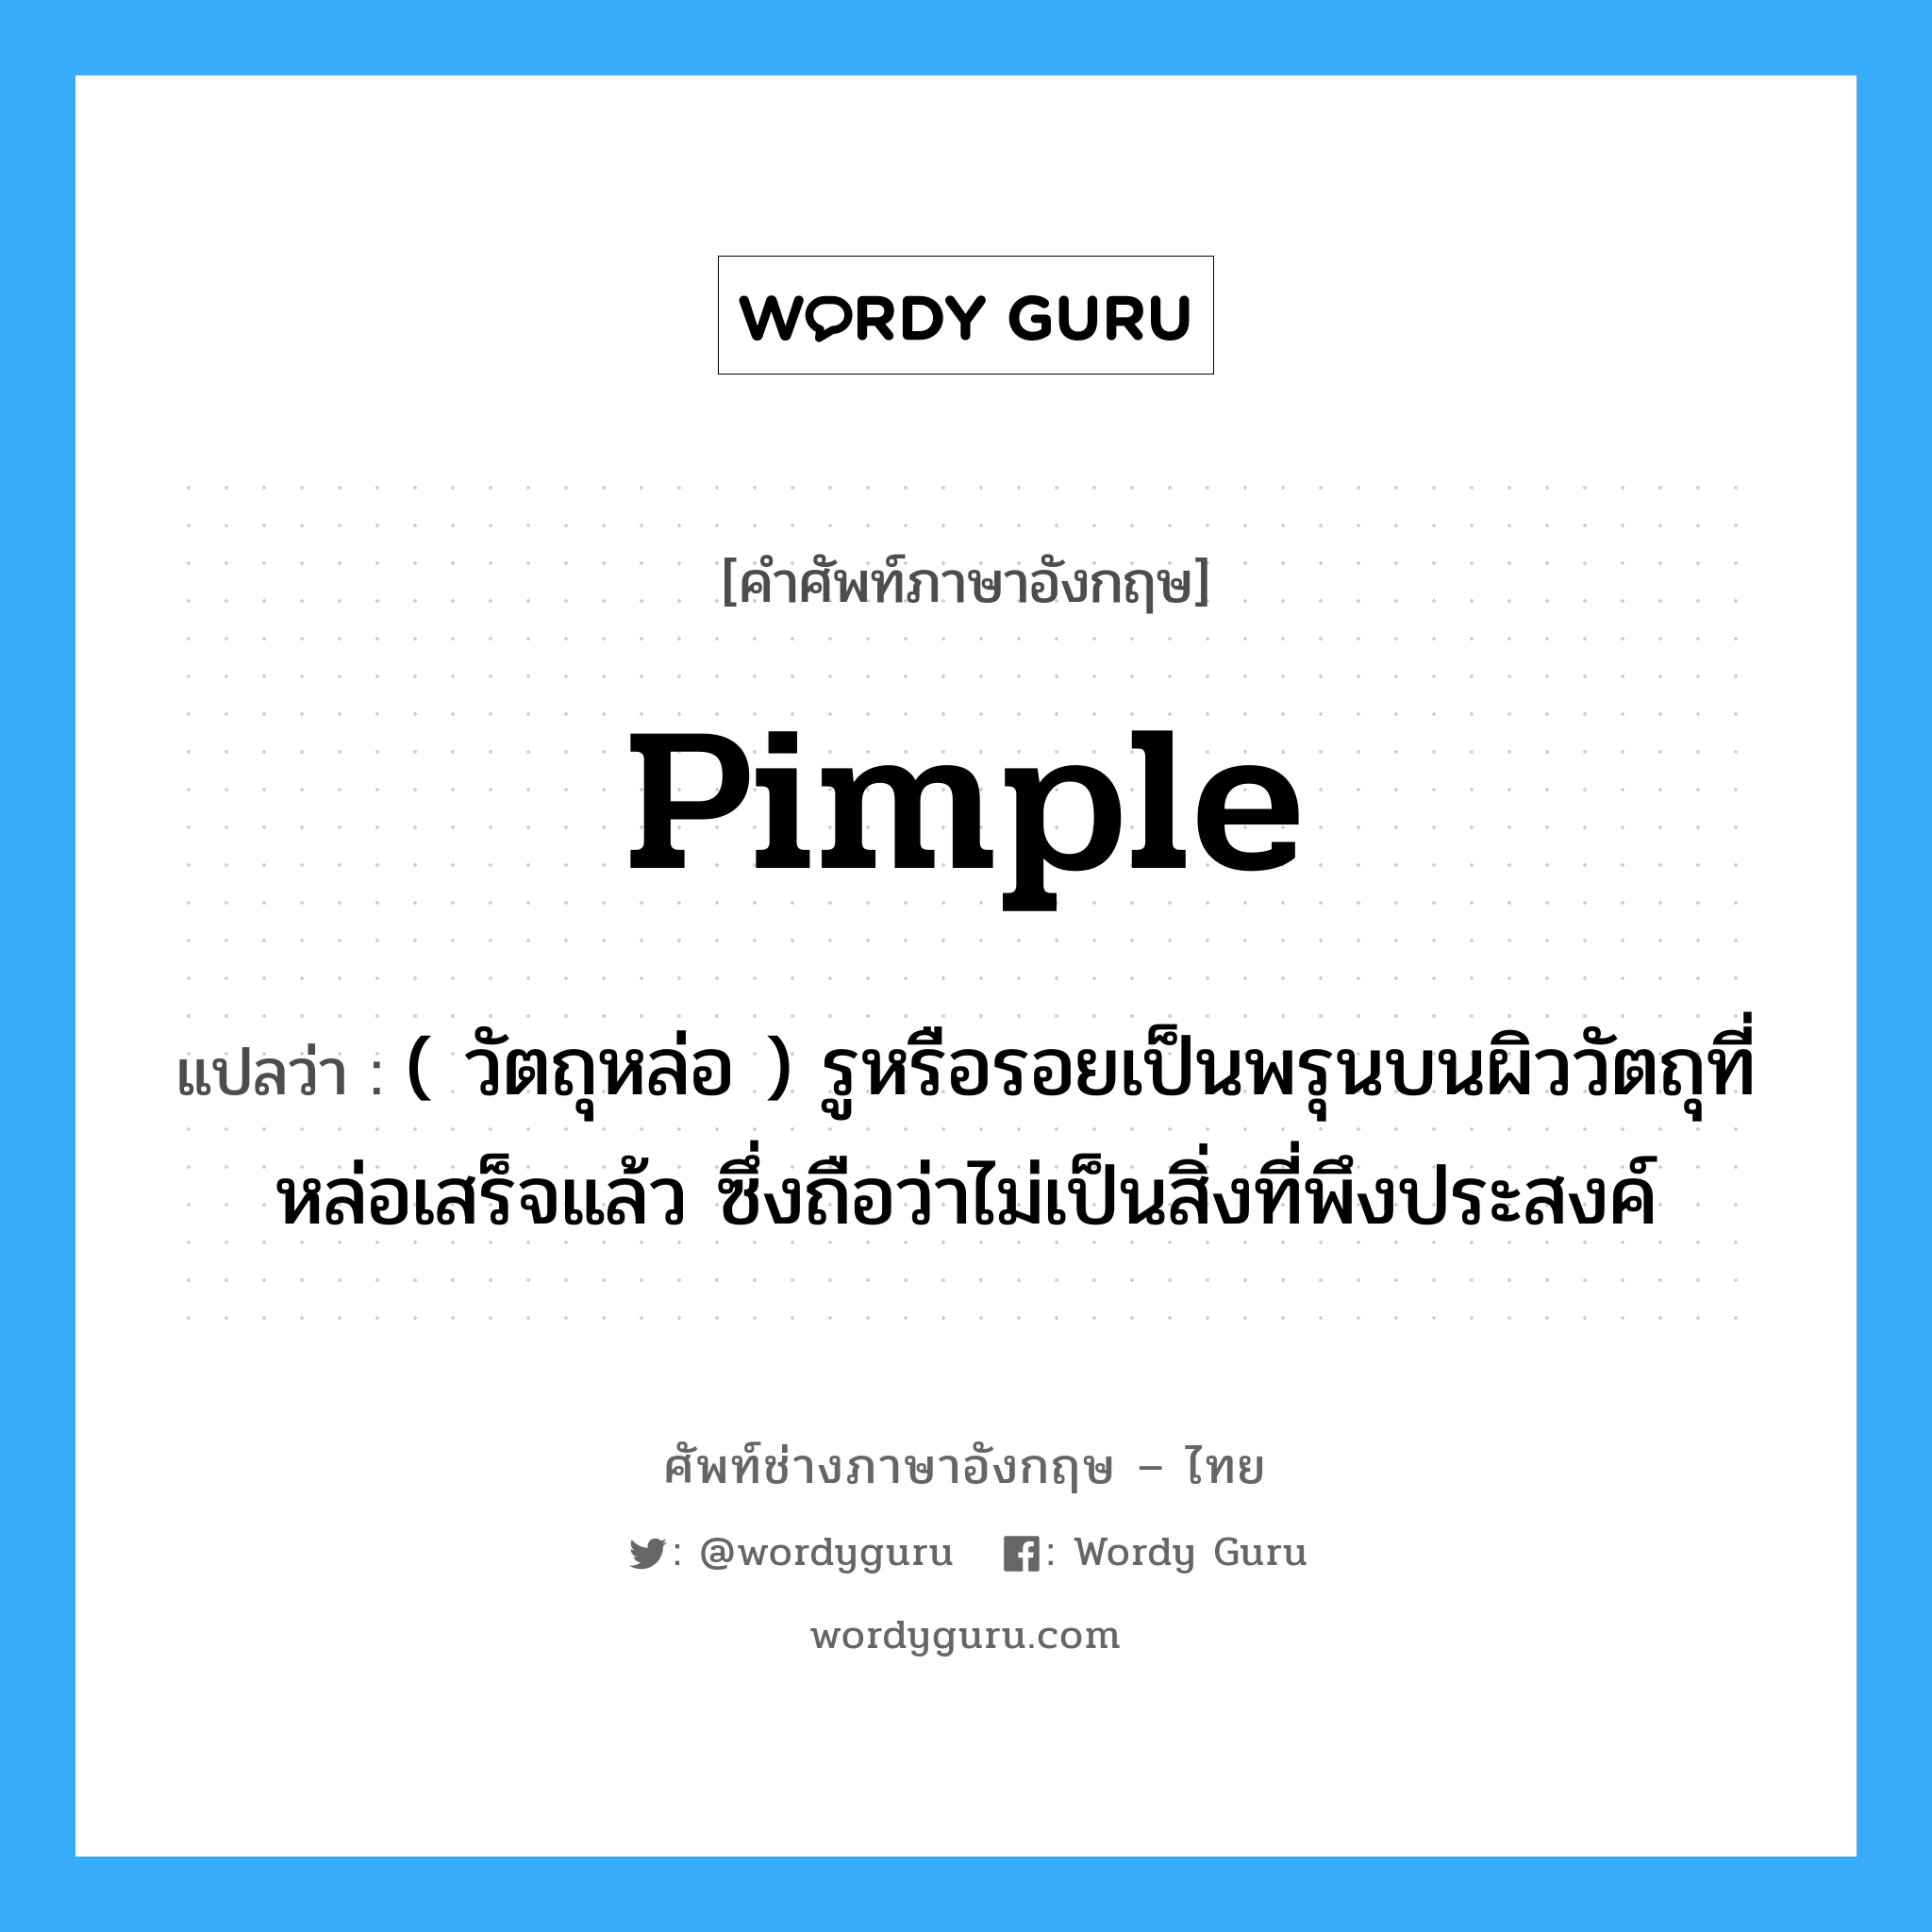 pimple แปลว่า?, คำศัพท์ช่างภาษาอังกฤษ - ไทย pimple คำศัพท์ภาษาอังกฤษ pimple แปลว่า ( วัตถุหล่อ ) รูหรือรอยเป็นพรุนบนผิววัตถุที่หล่อเสร็จแล้ว ซึ่งถือว่าไม่เป็นสิ่งที่พึงประสงค์